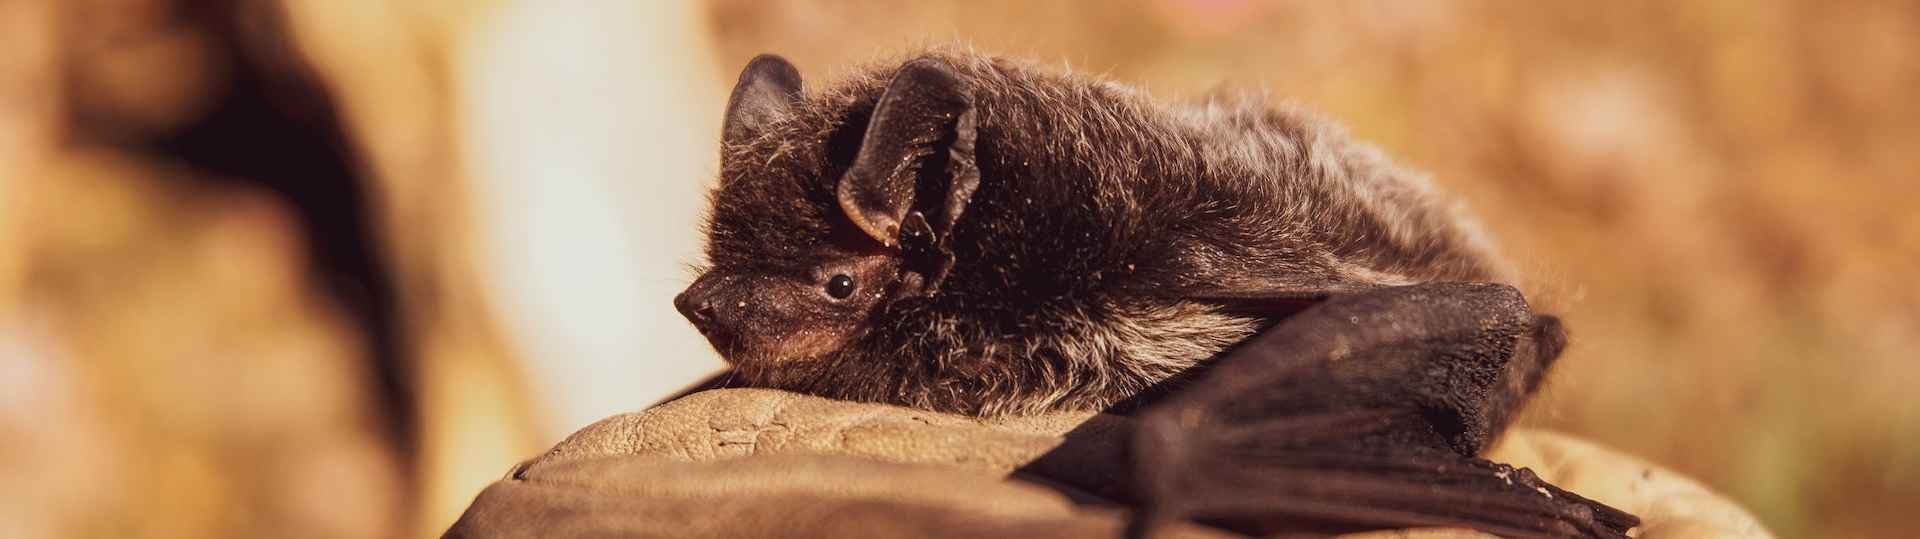 Hallan un nuevo virus en un murciélago ruso que podría infectar a humanos